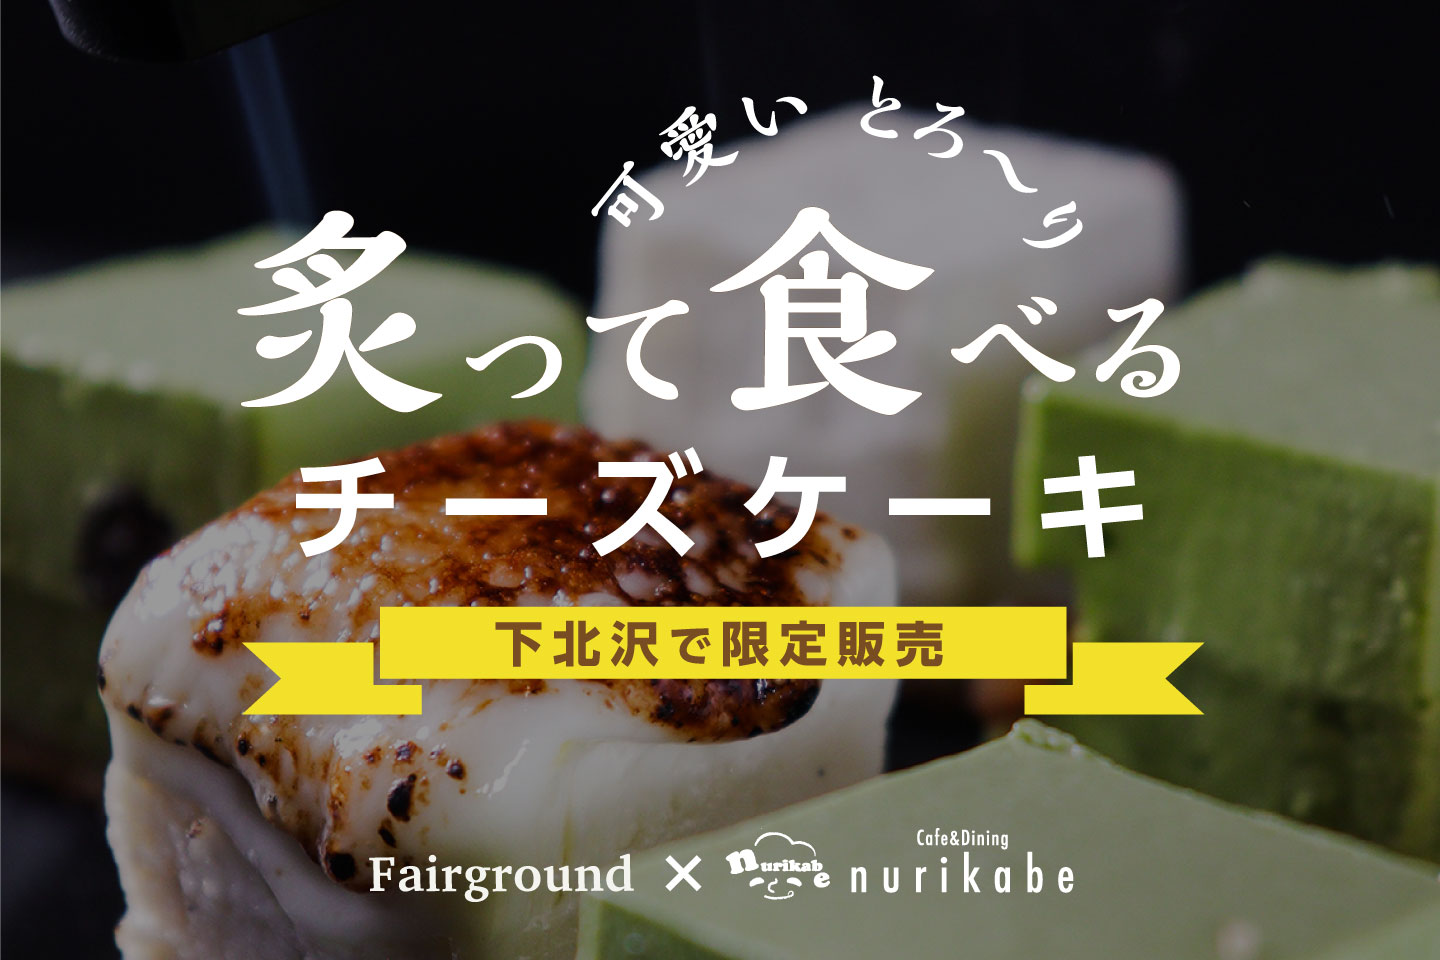 Bar&Wine shop 「Fairground」 ×  nurikabeコラボ企画